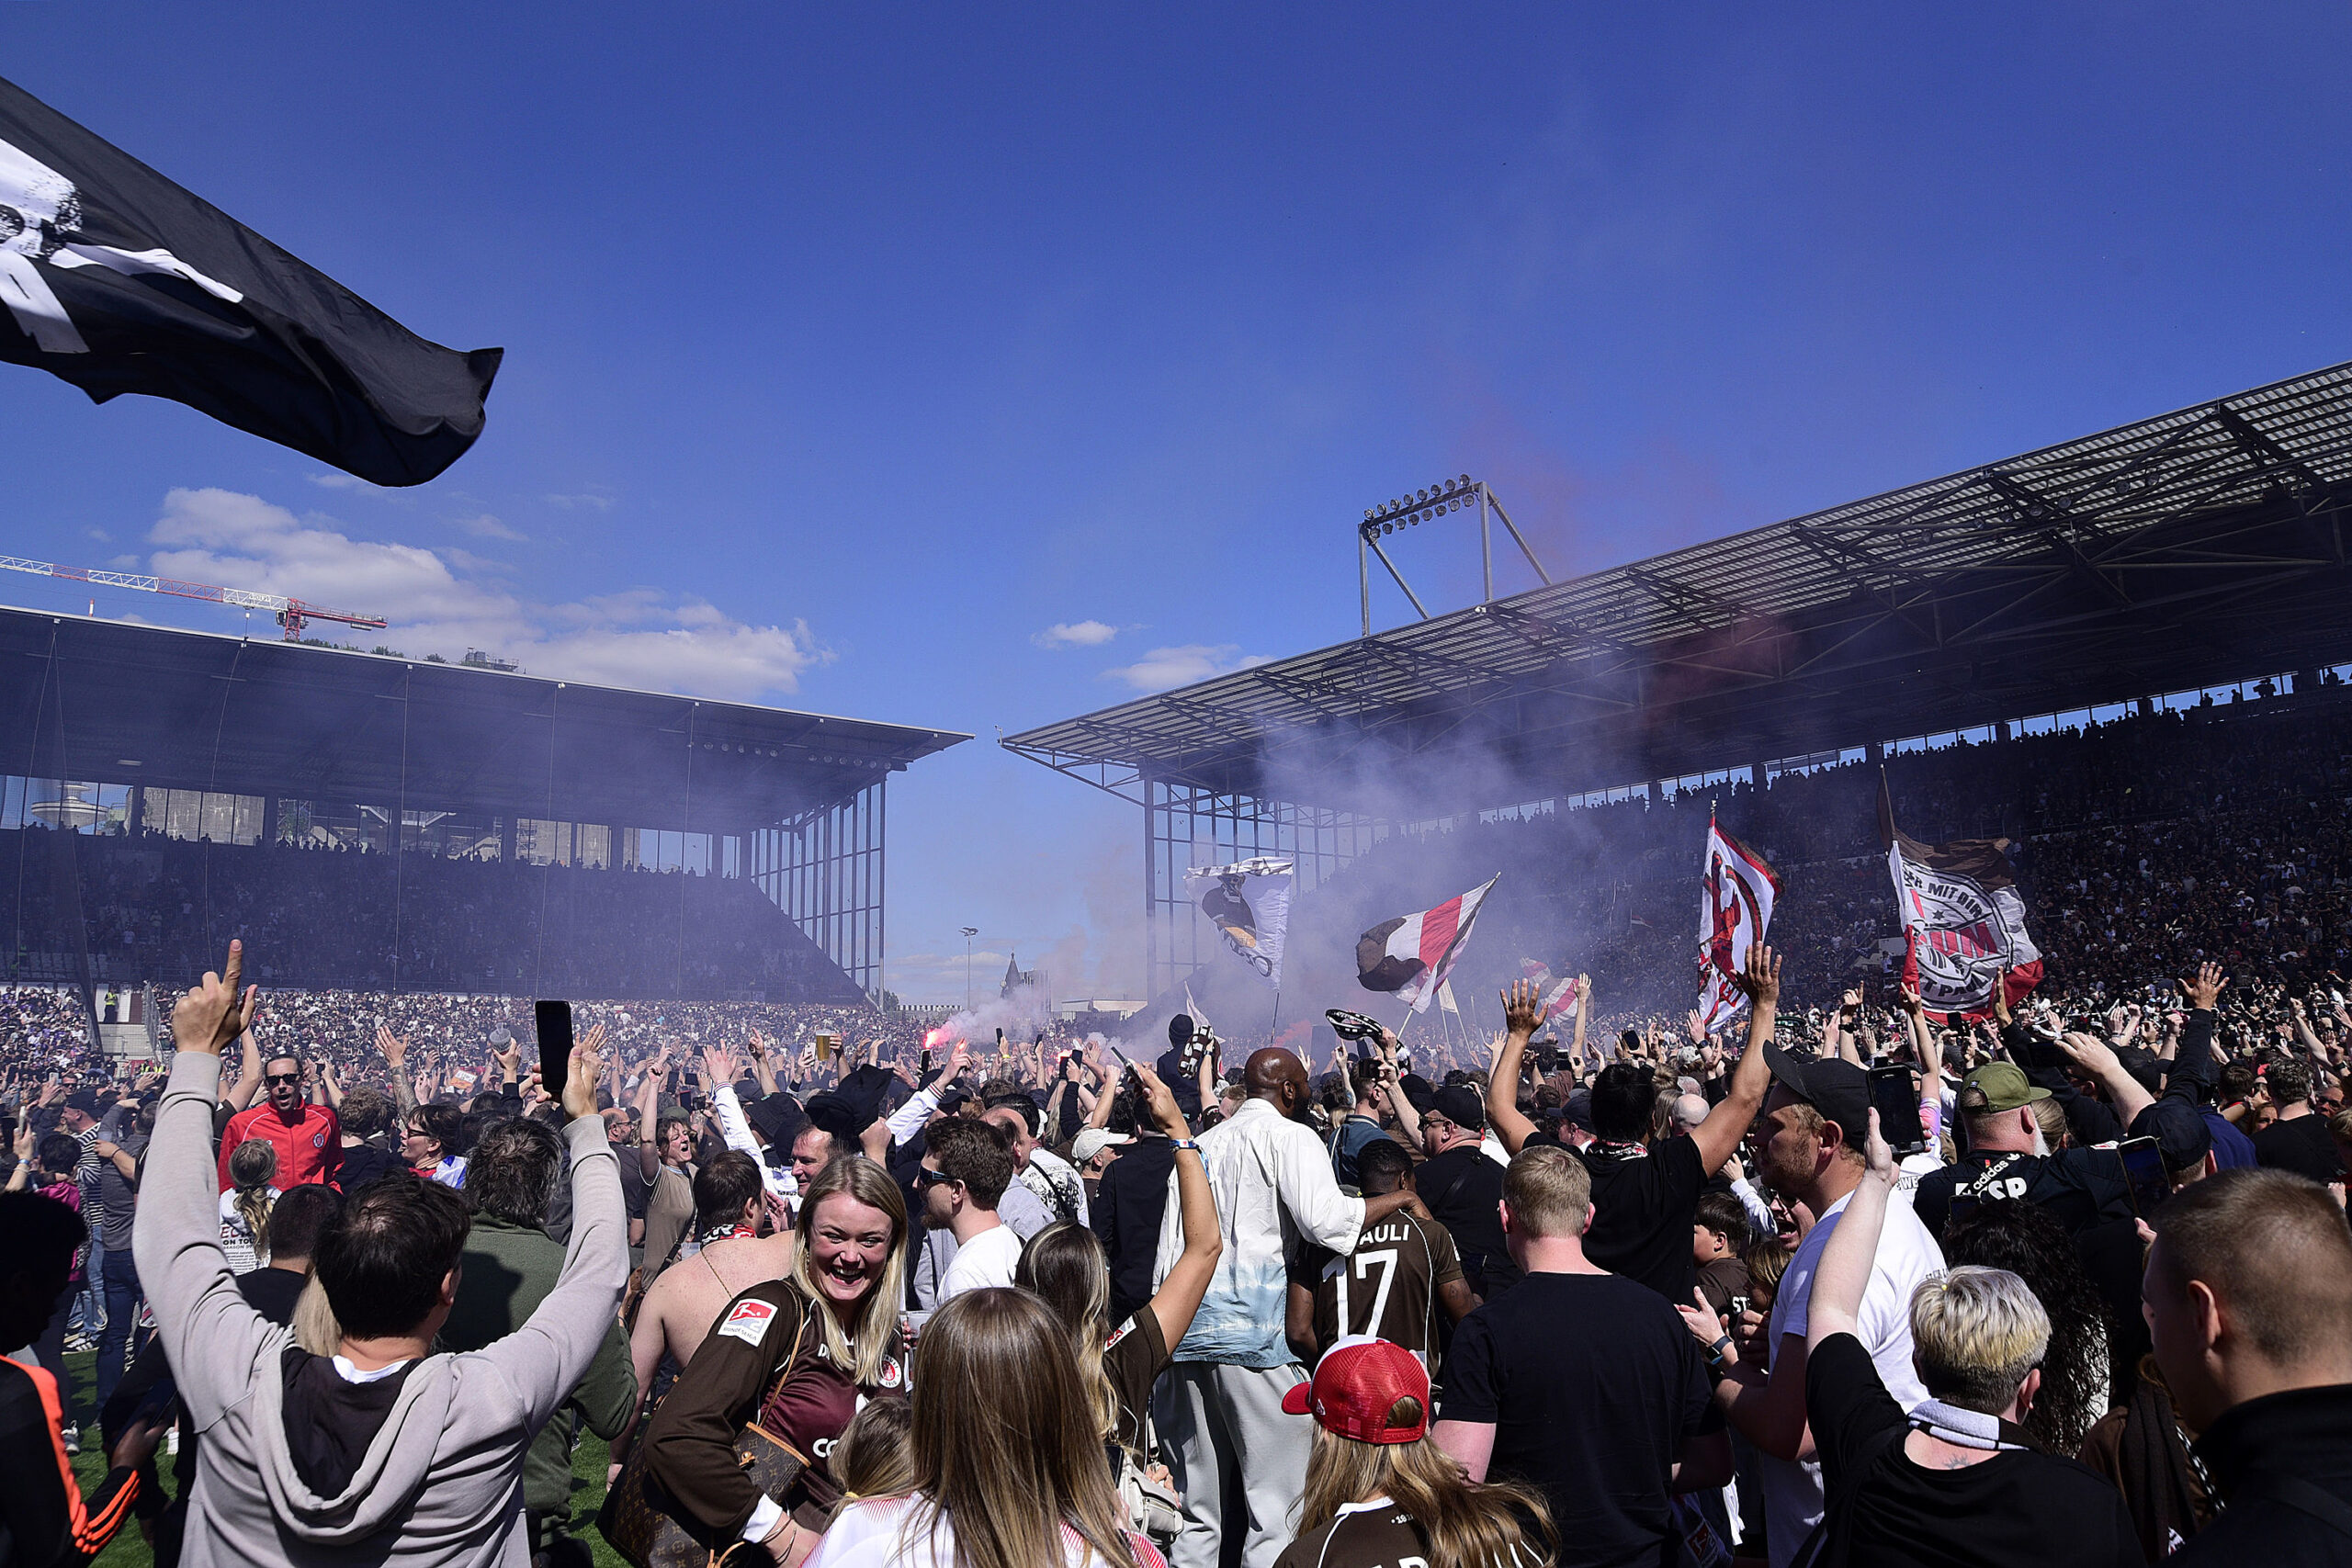 Platzsturm der Fans des FC St. Pauli am Millerntorstadion.